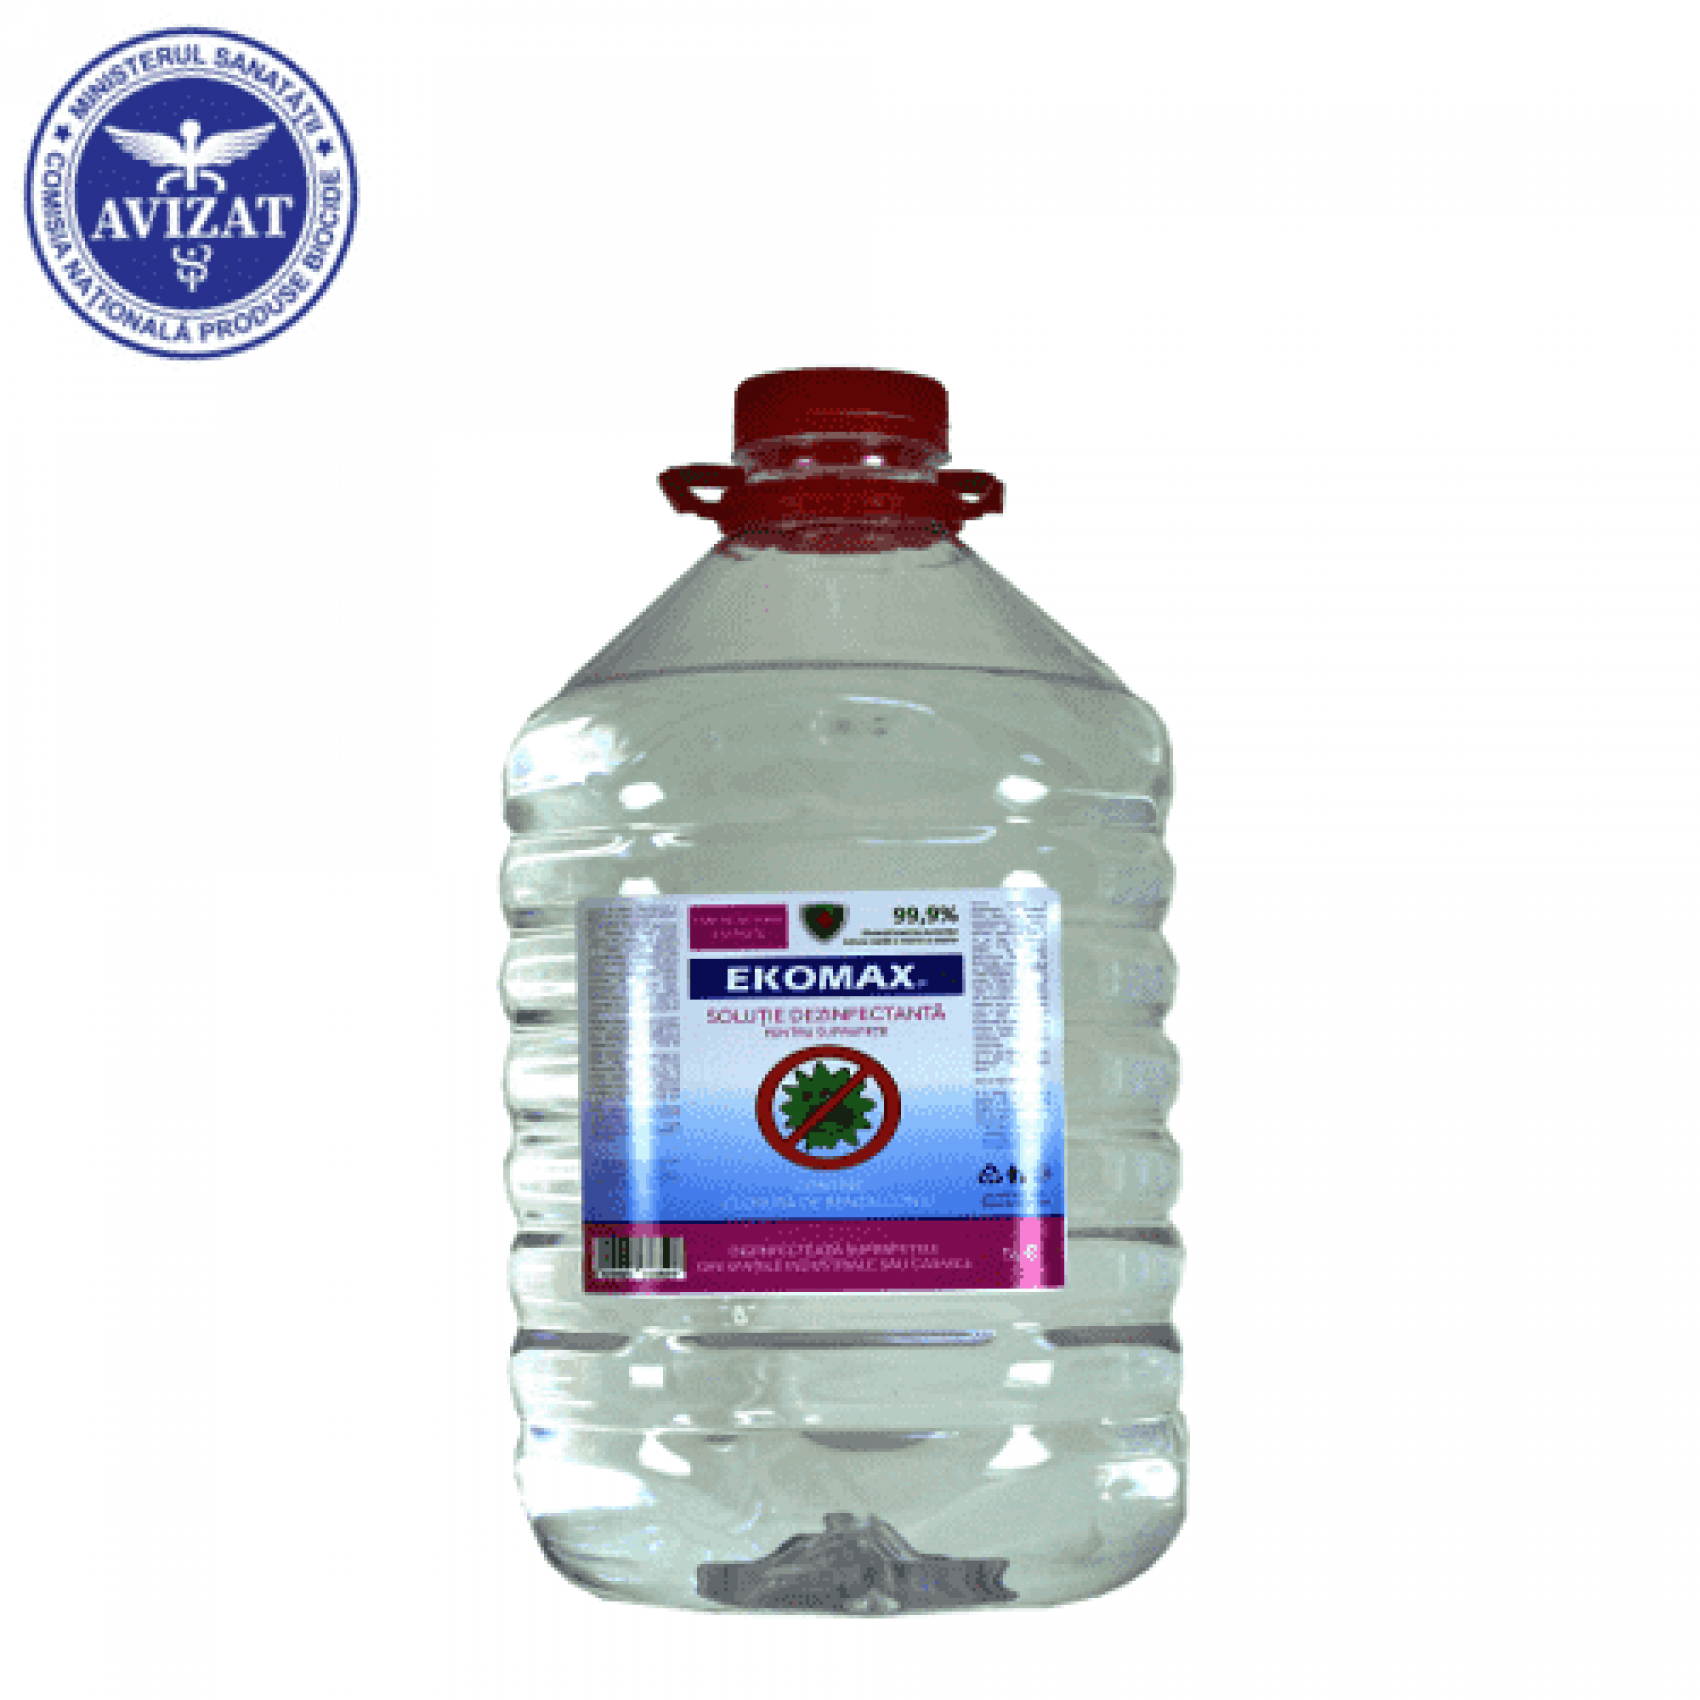 Dezinfectant pentru suprafete Ekomax D - 5 litri